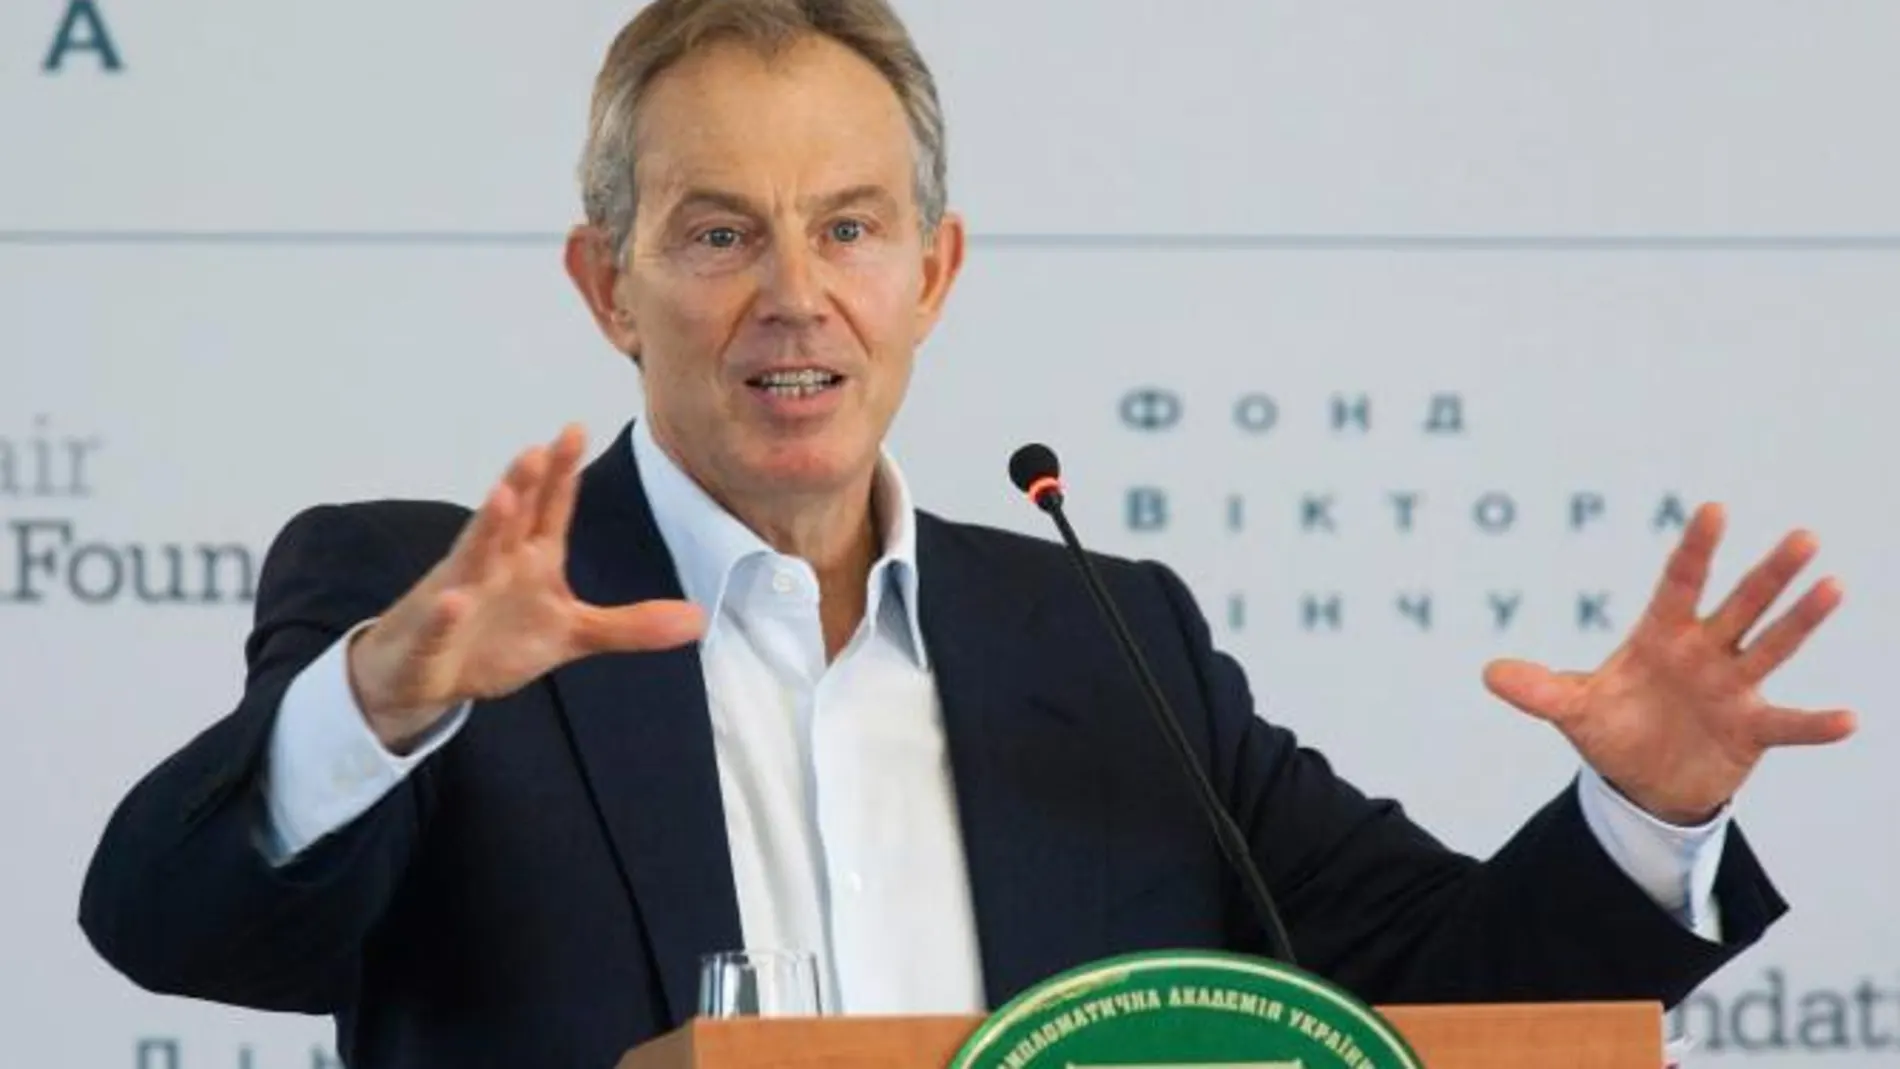 Unos documentos revelan que hubo un complot laborista para derrocar a Blair